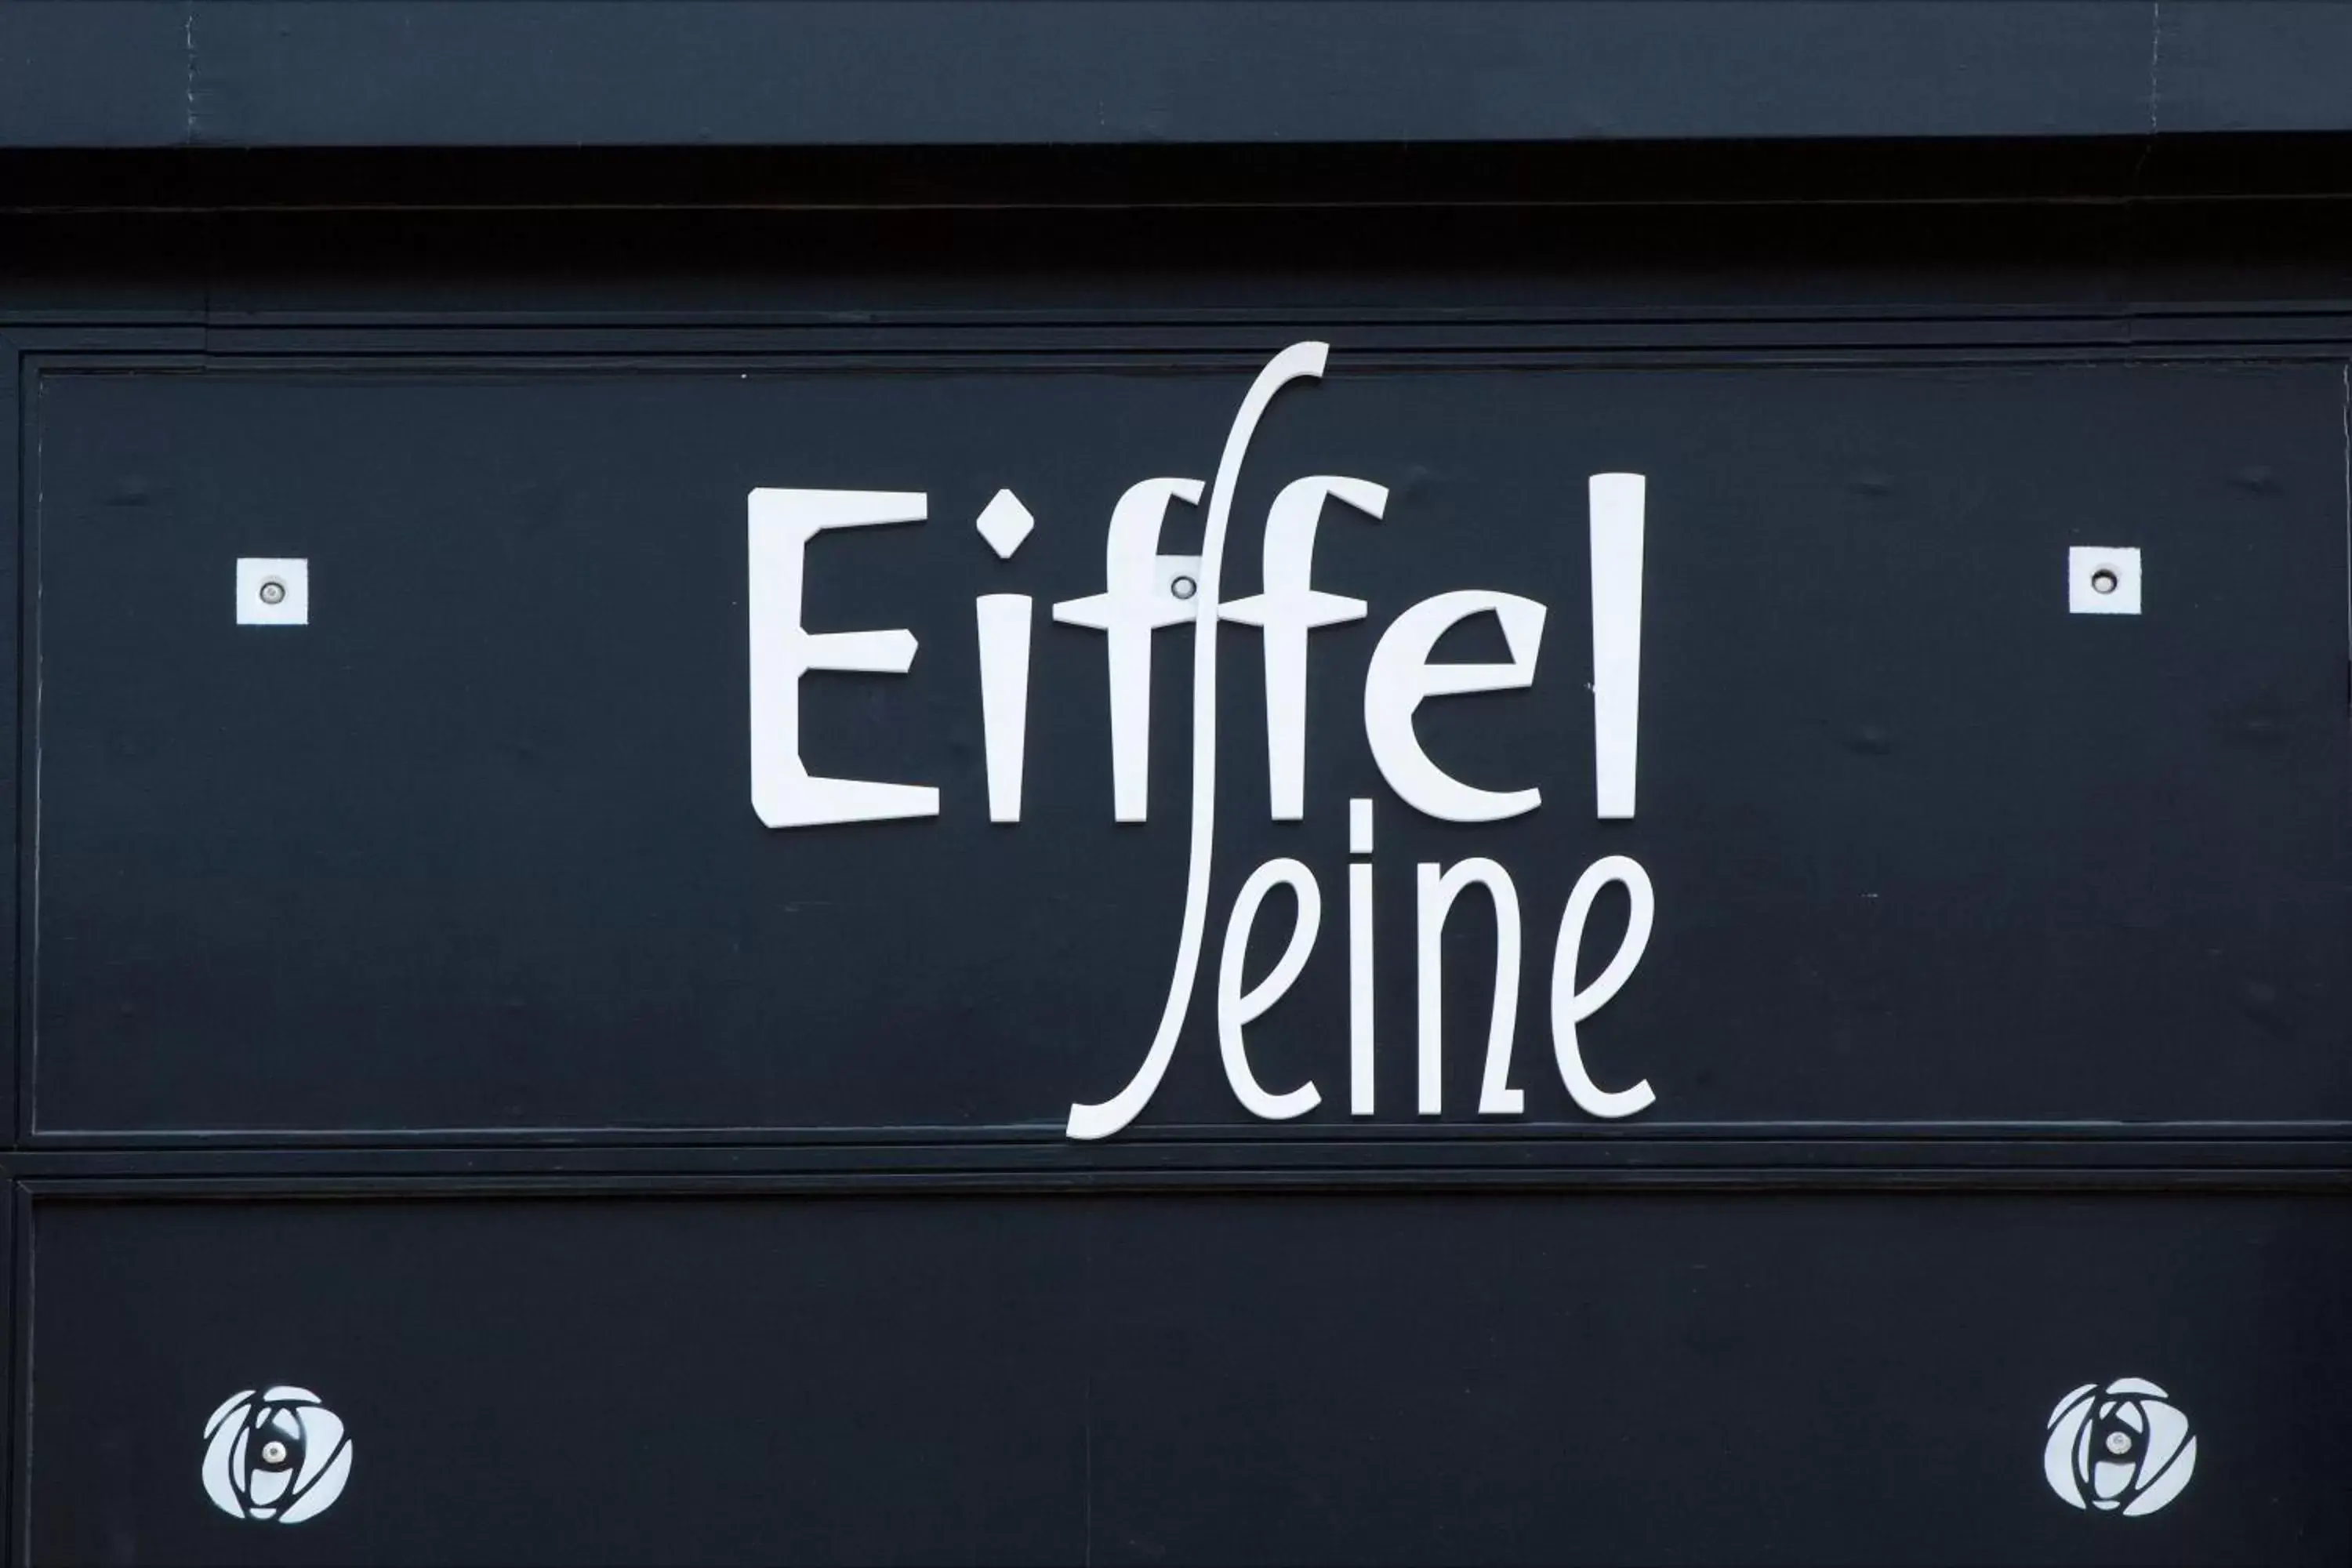 Property logo or sign in Hotel Eiffel Seine